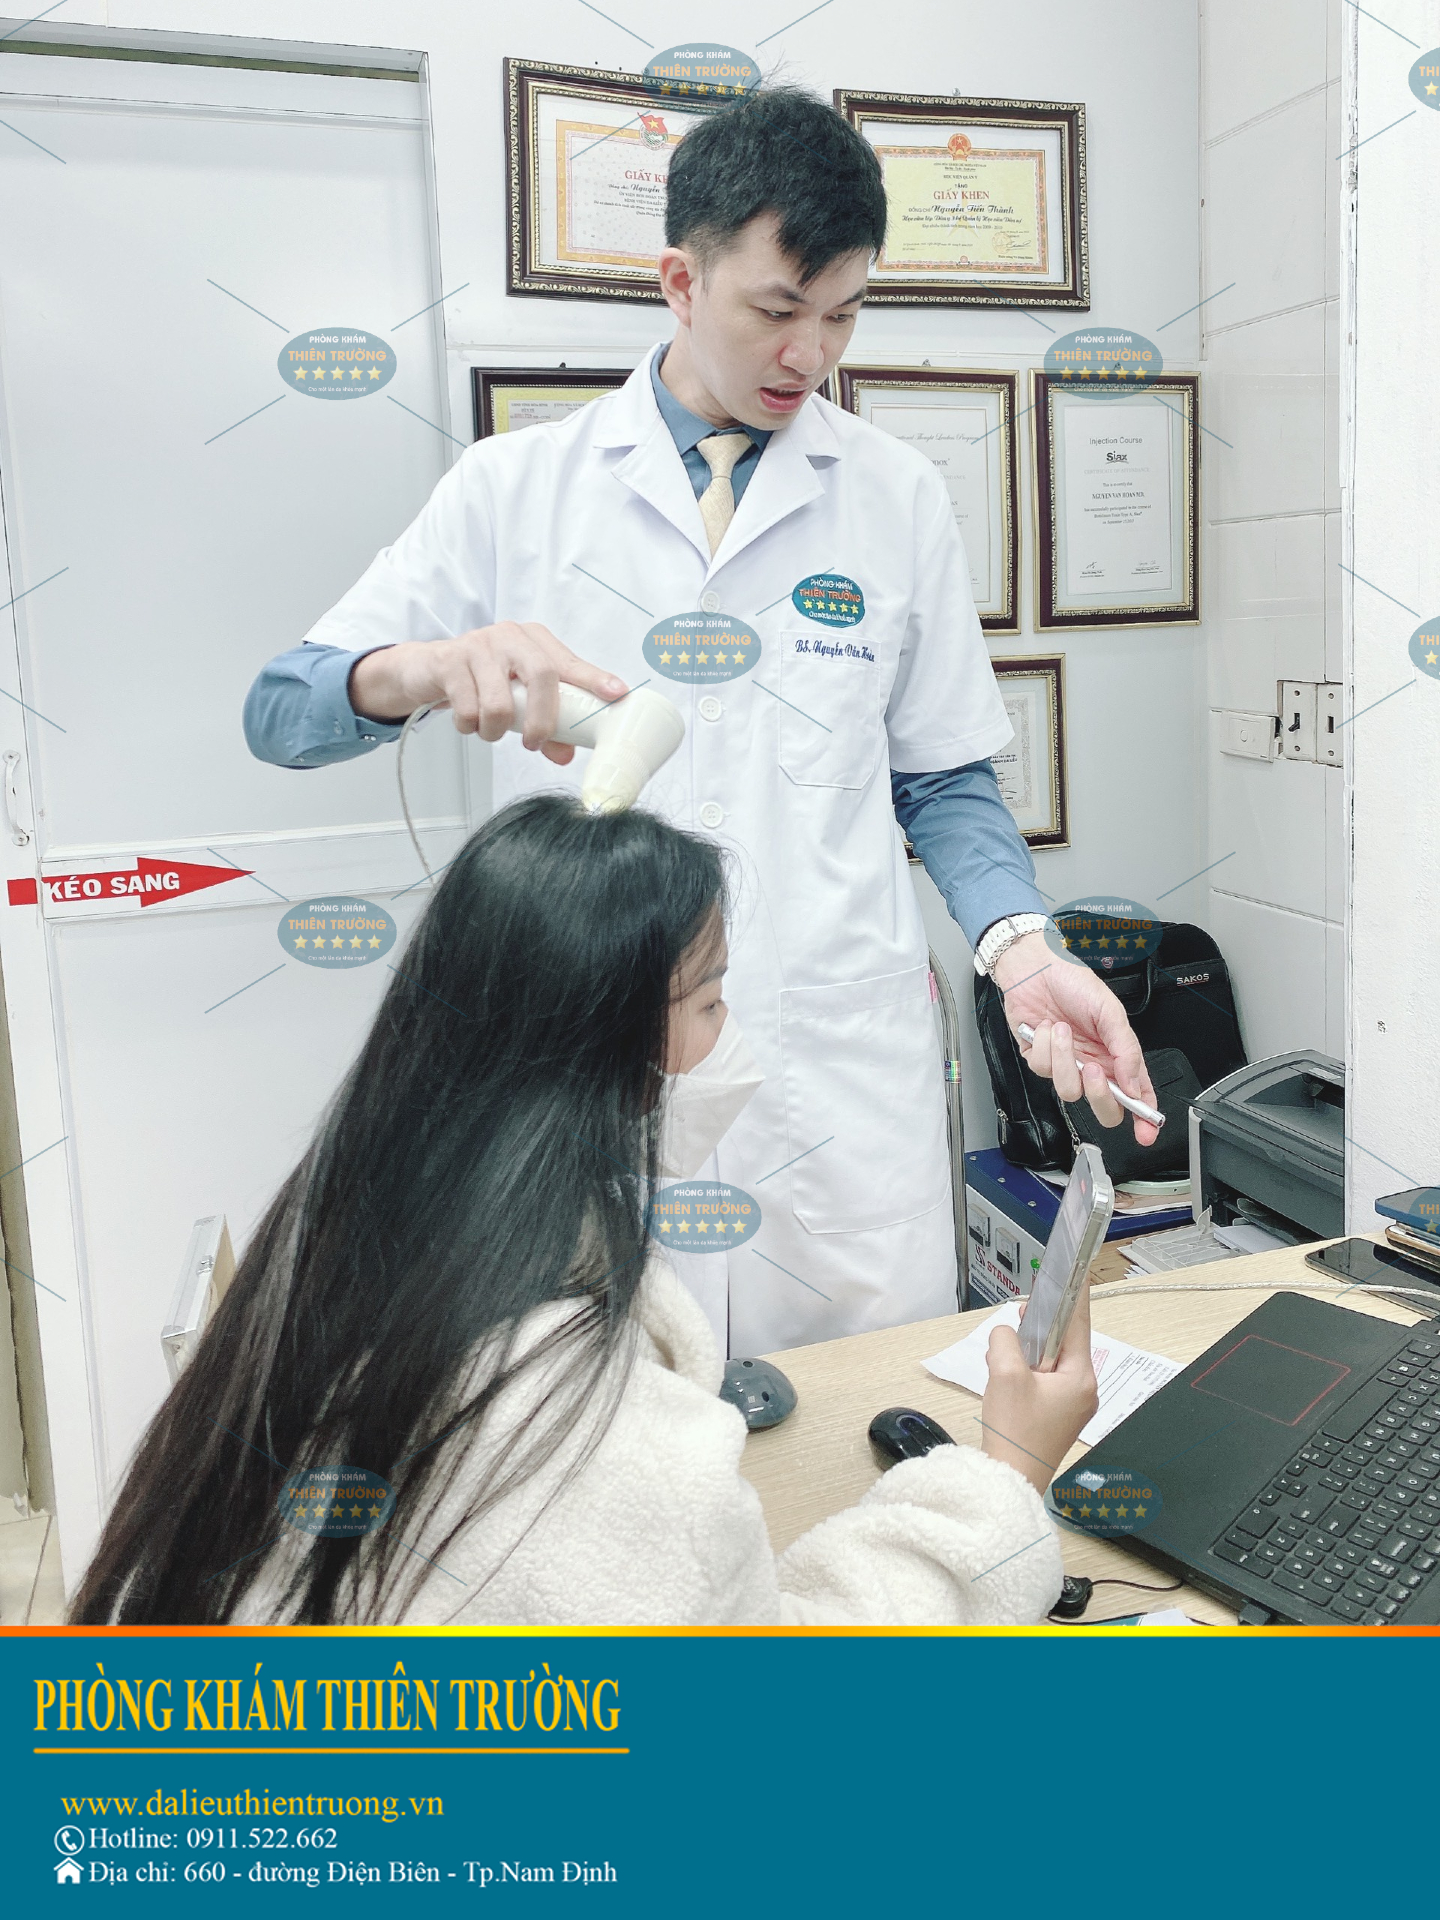 Hình ảnh: Thạc sĩ- Bác sĩ Nguyễn Văn Hoàn đang khám tóc cho khách hàng tại Phòng khám Da liễu thẩm mỹ Thiên Trường.